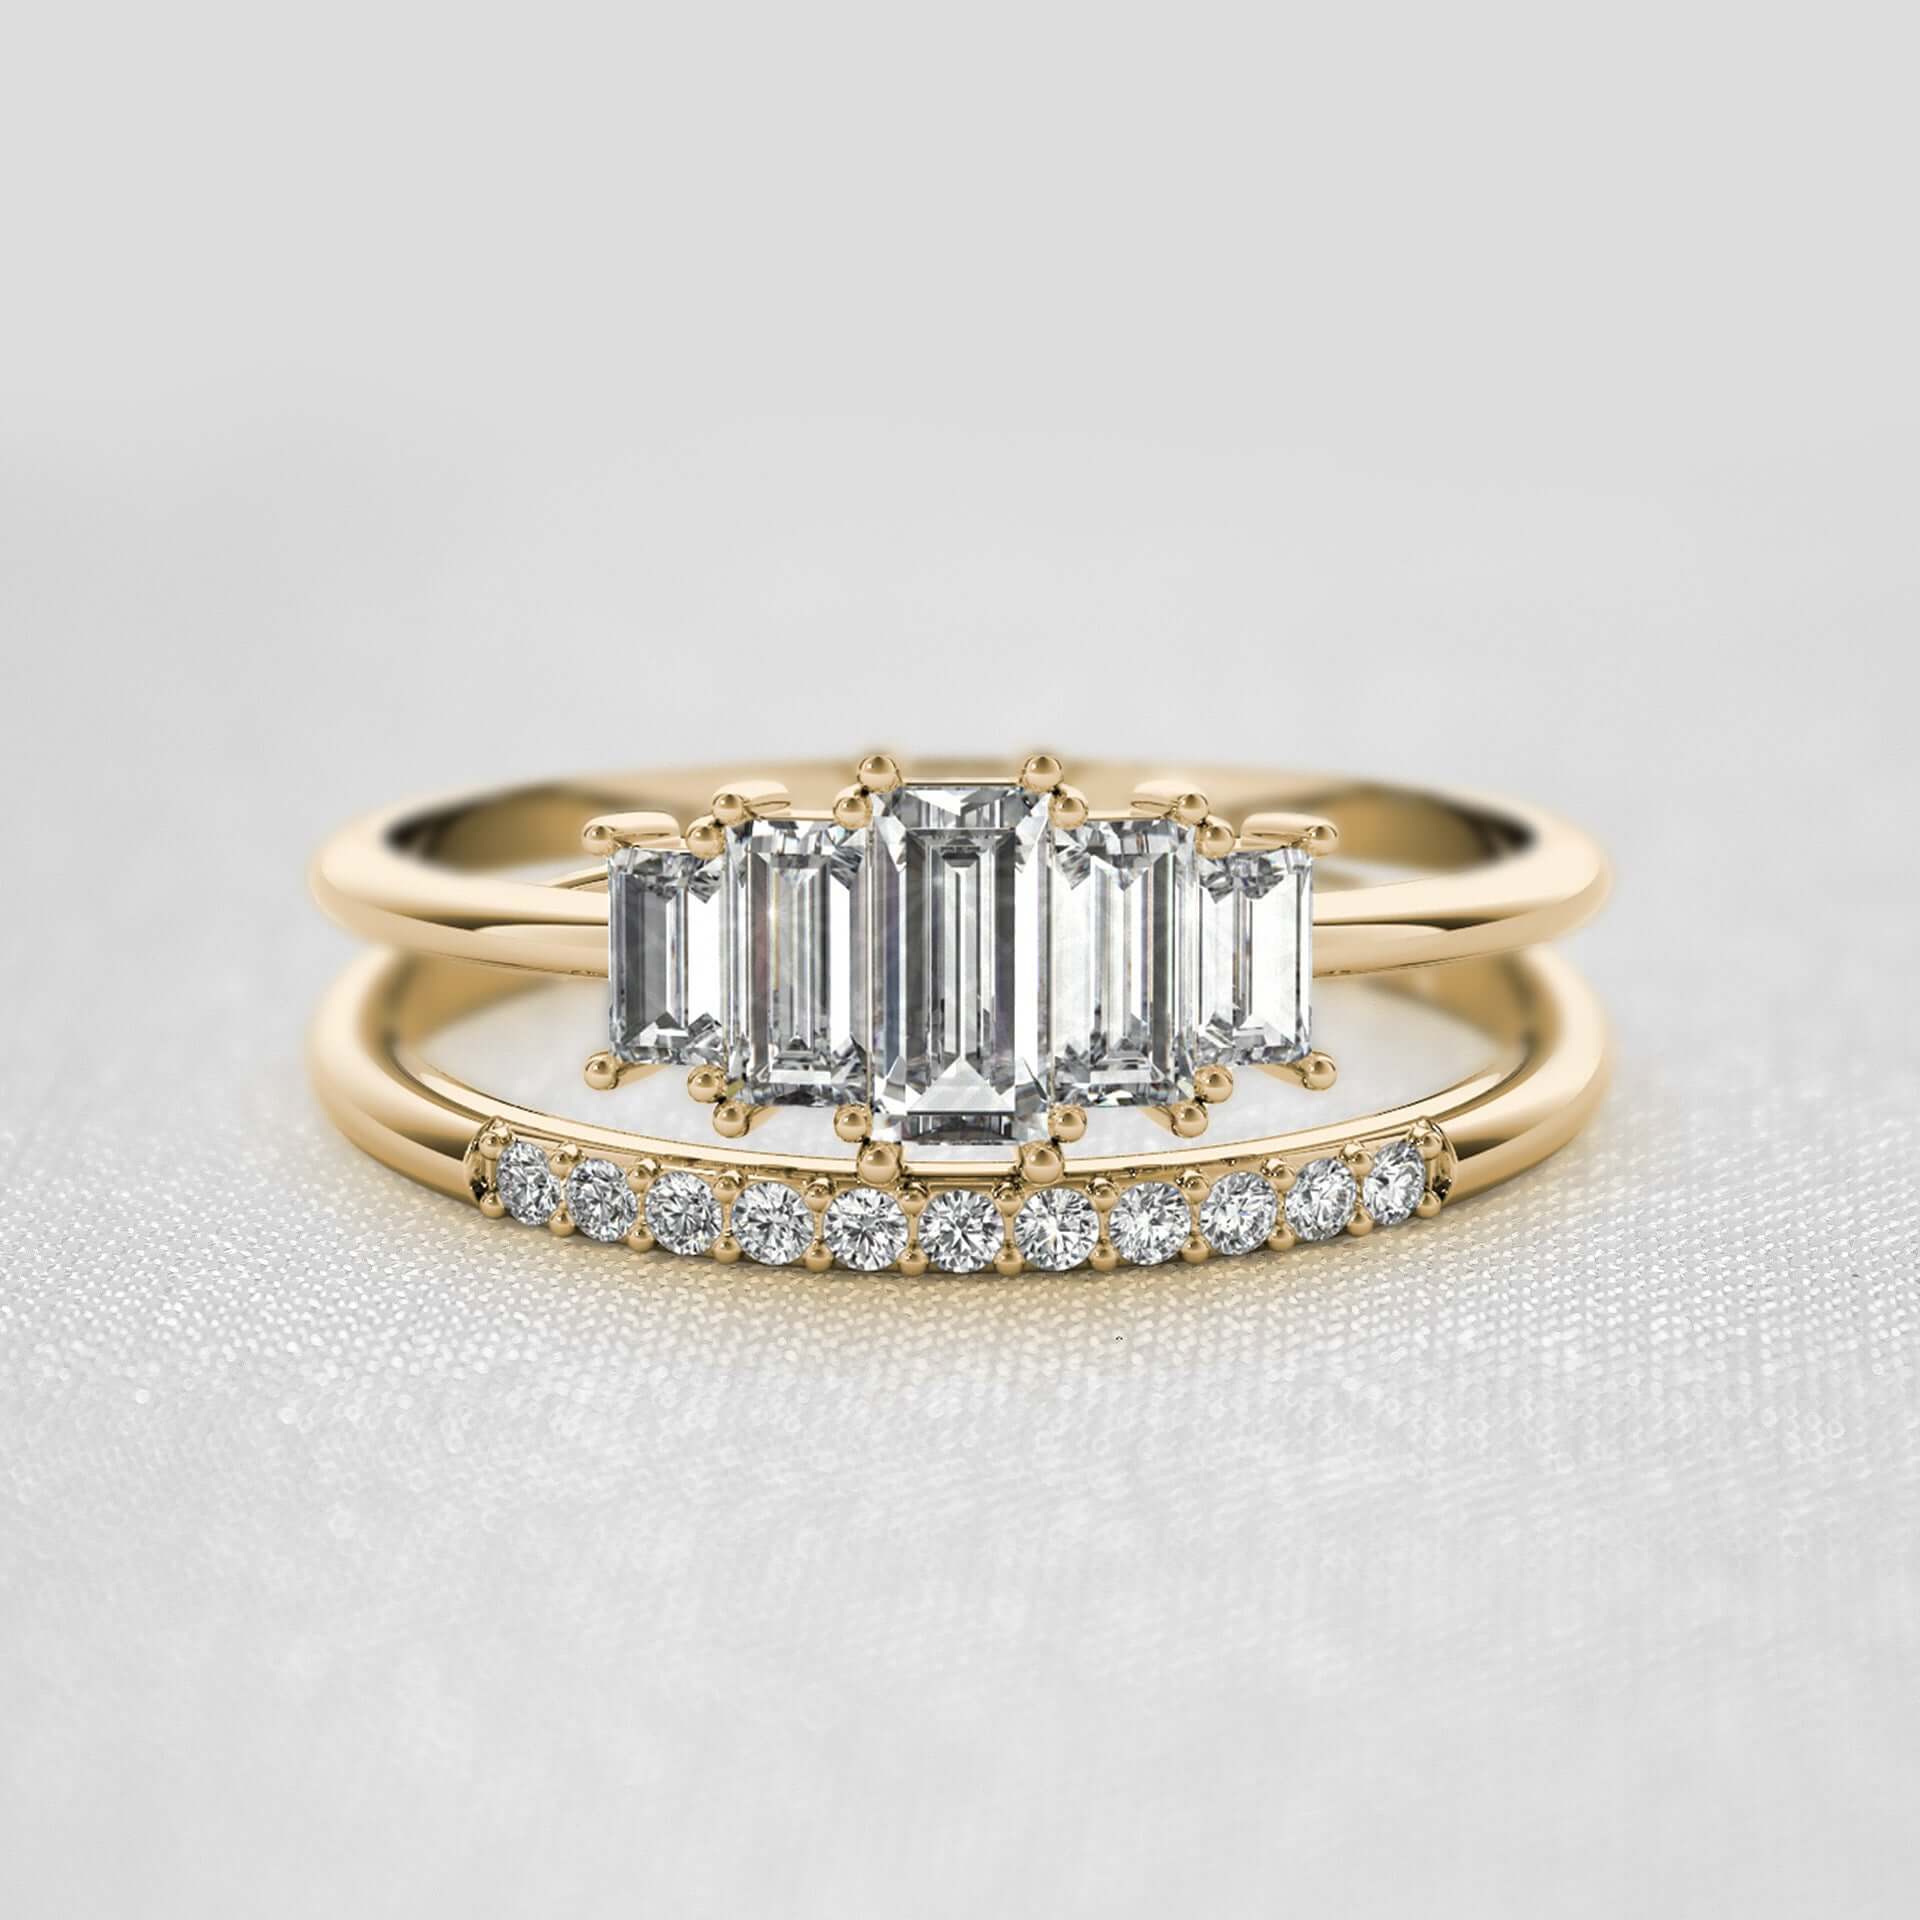 Bellamy Art Deco Inspired Engagement Ring | Lisa Robin